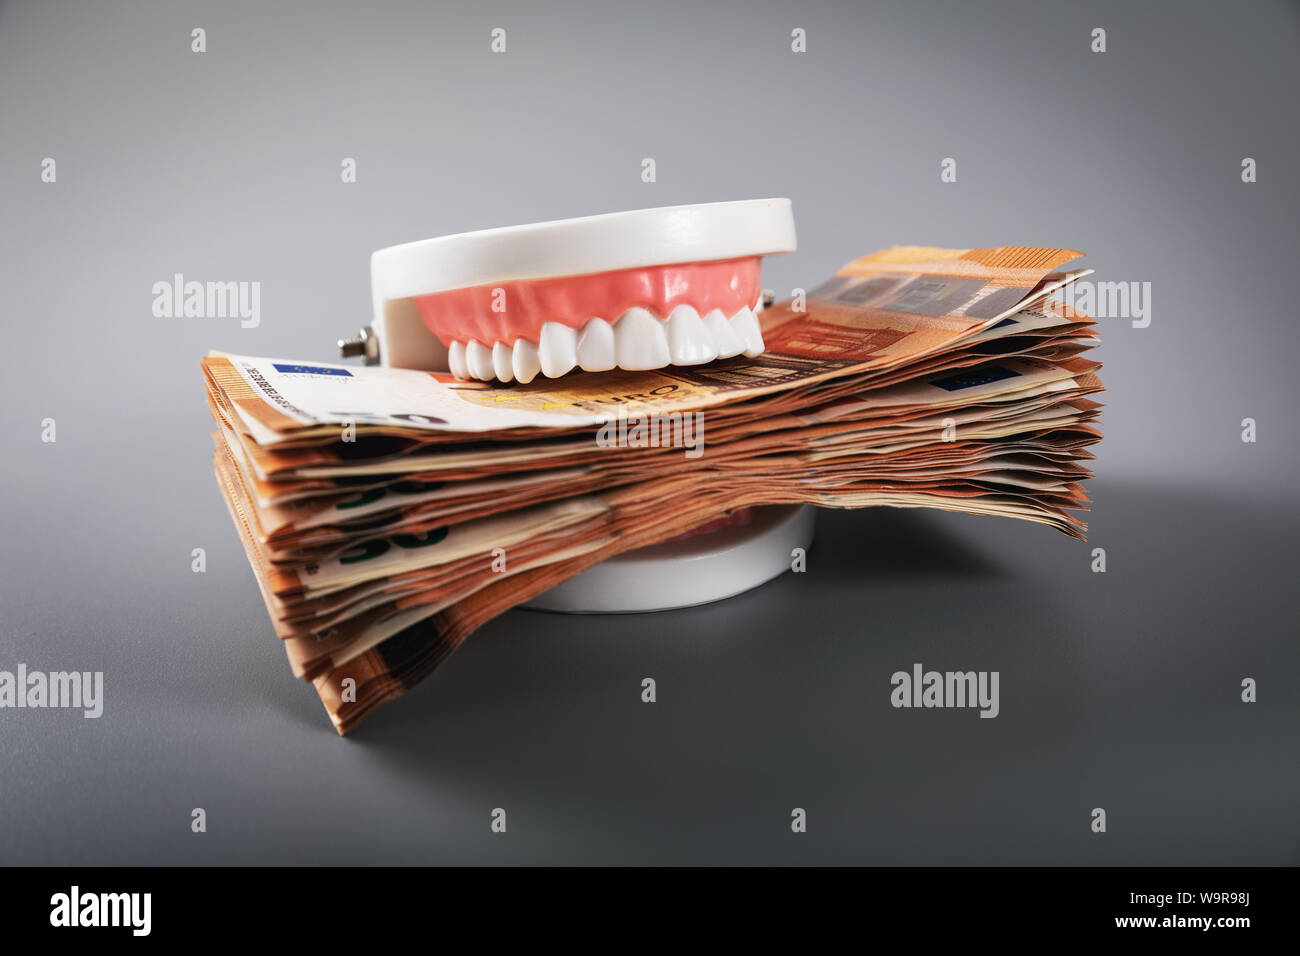 Concepto de la codicia - dientes modelo monetario en euros comer facturas Foto de stock